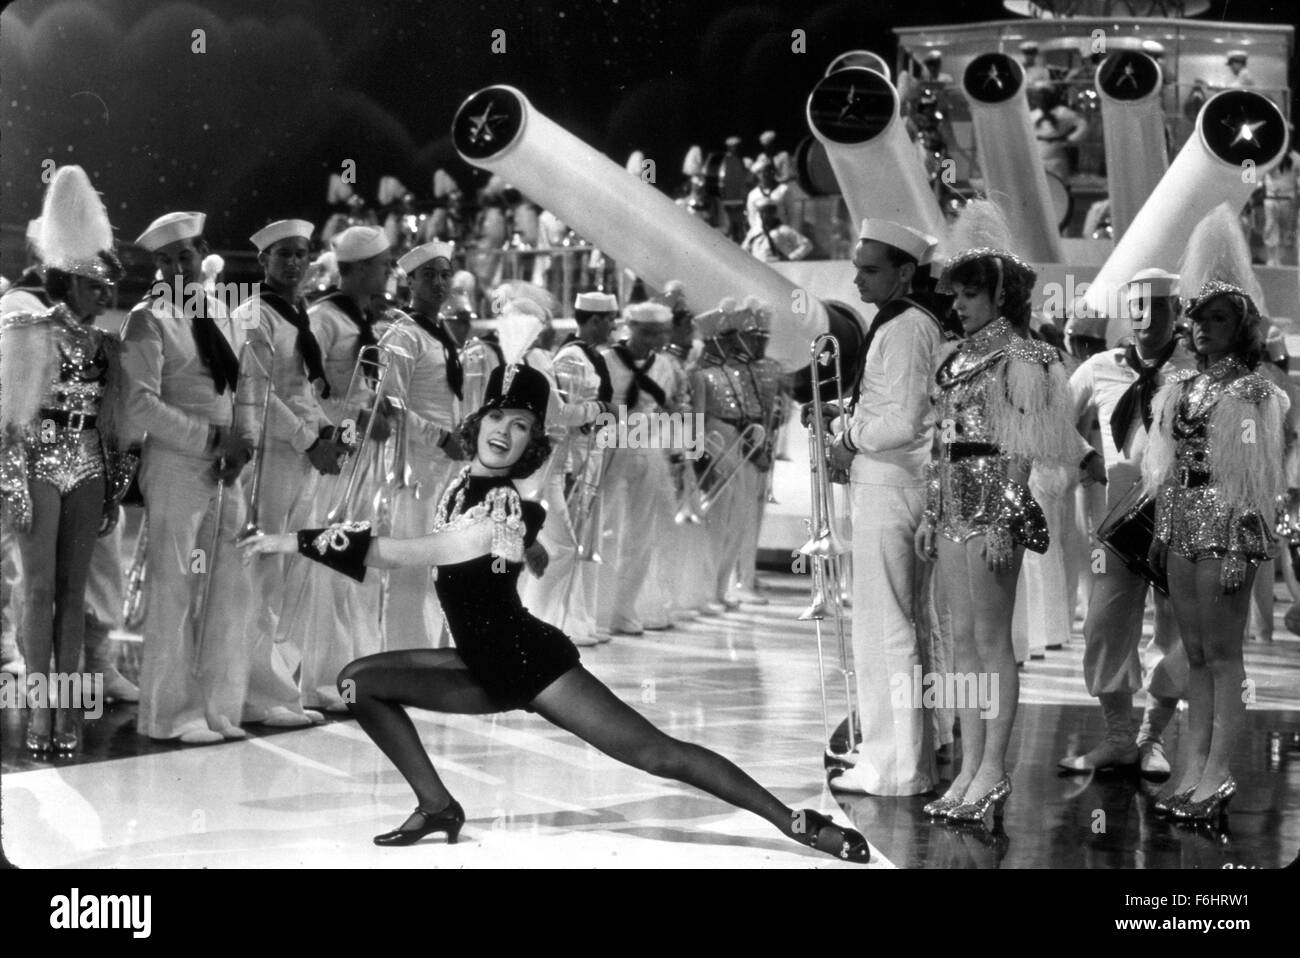 1936, il titolo del film: nato a ballare, Direttore: ROY DEL RUTH, Studio: MGM, nella foto: DANCING LADIES, ELEANOR POWELL, ballare, cantare, mostrano le ragazze, cannone. (Credito Immagine: SNAP) Foto Stock